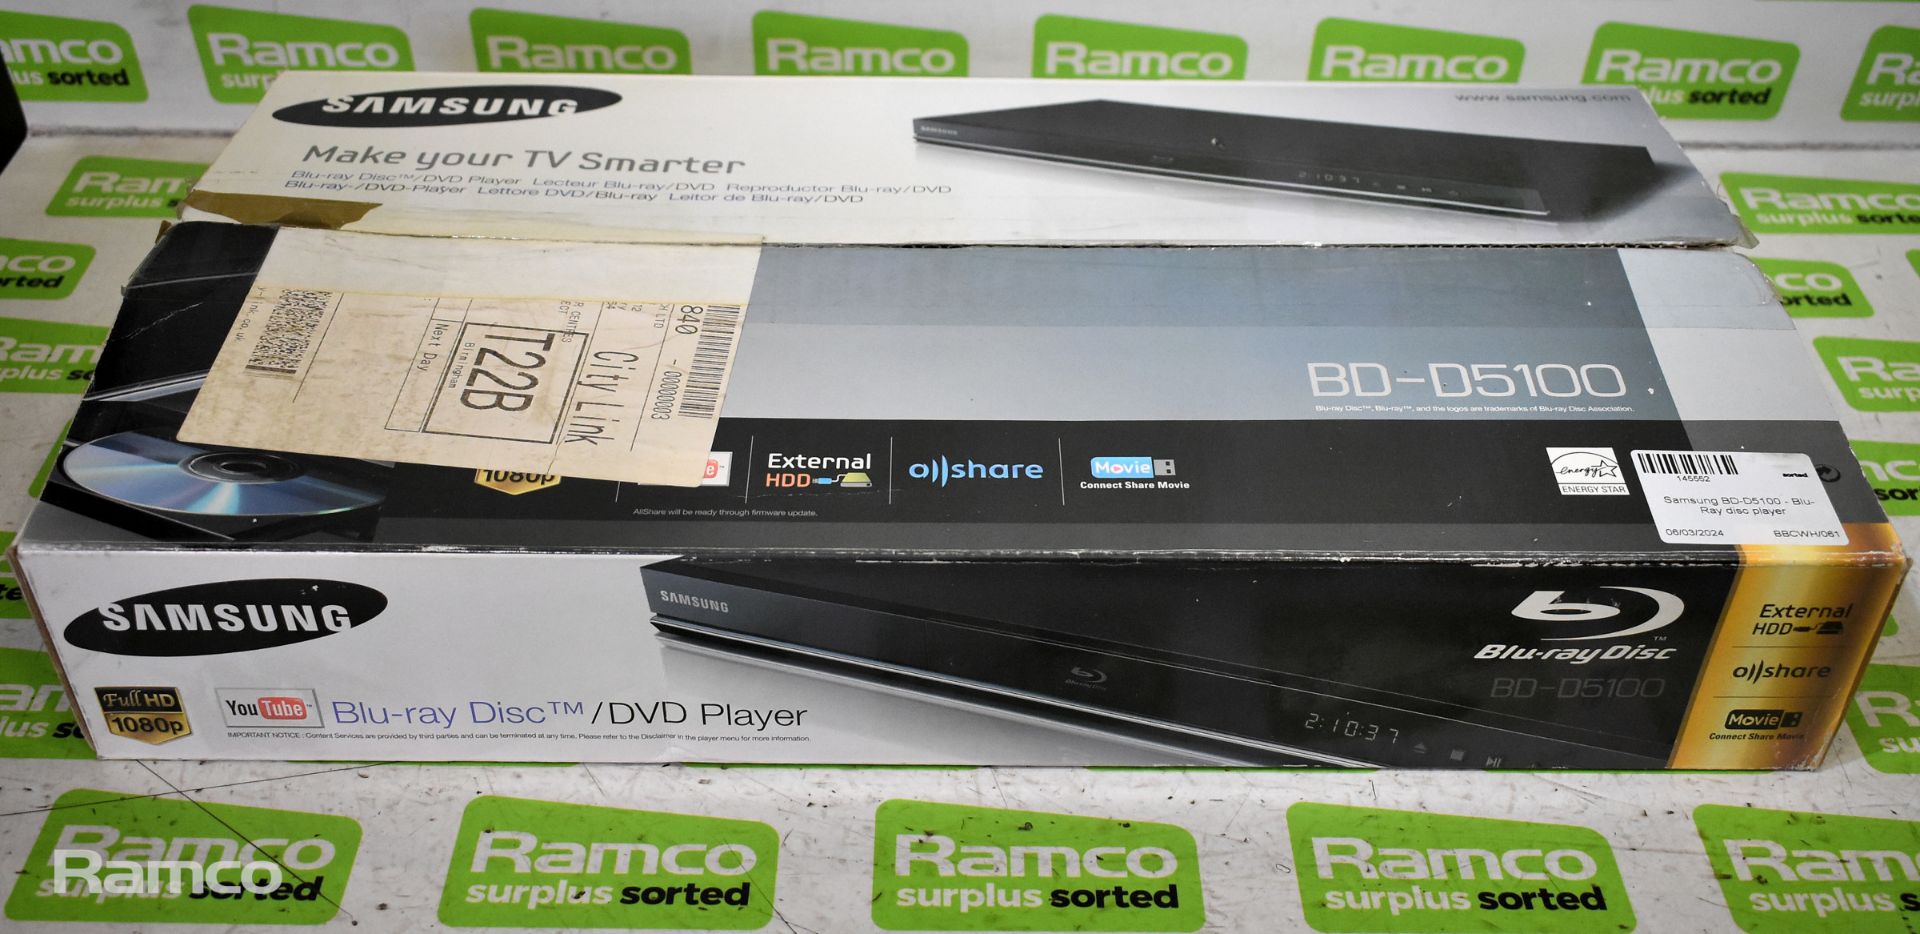 Samsung BD-D5100 blu-ray player, 2x Panasonic DVD-S48EB-K DVD/CD players - Black - Image 2 of 12